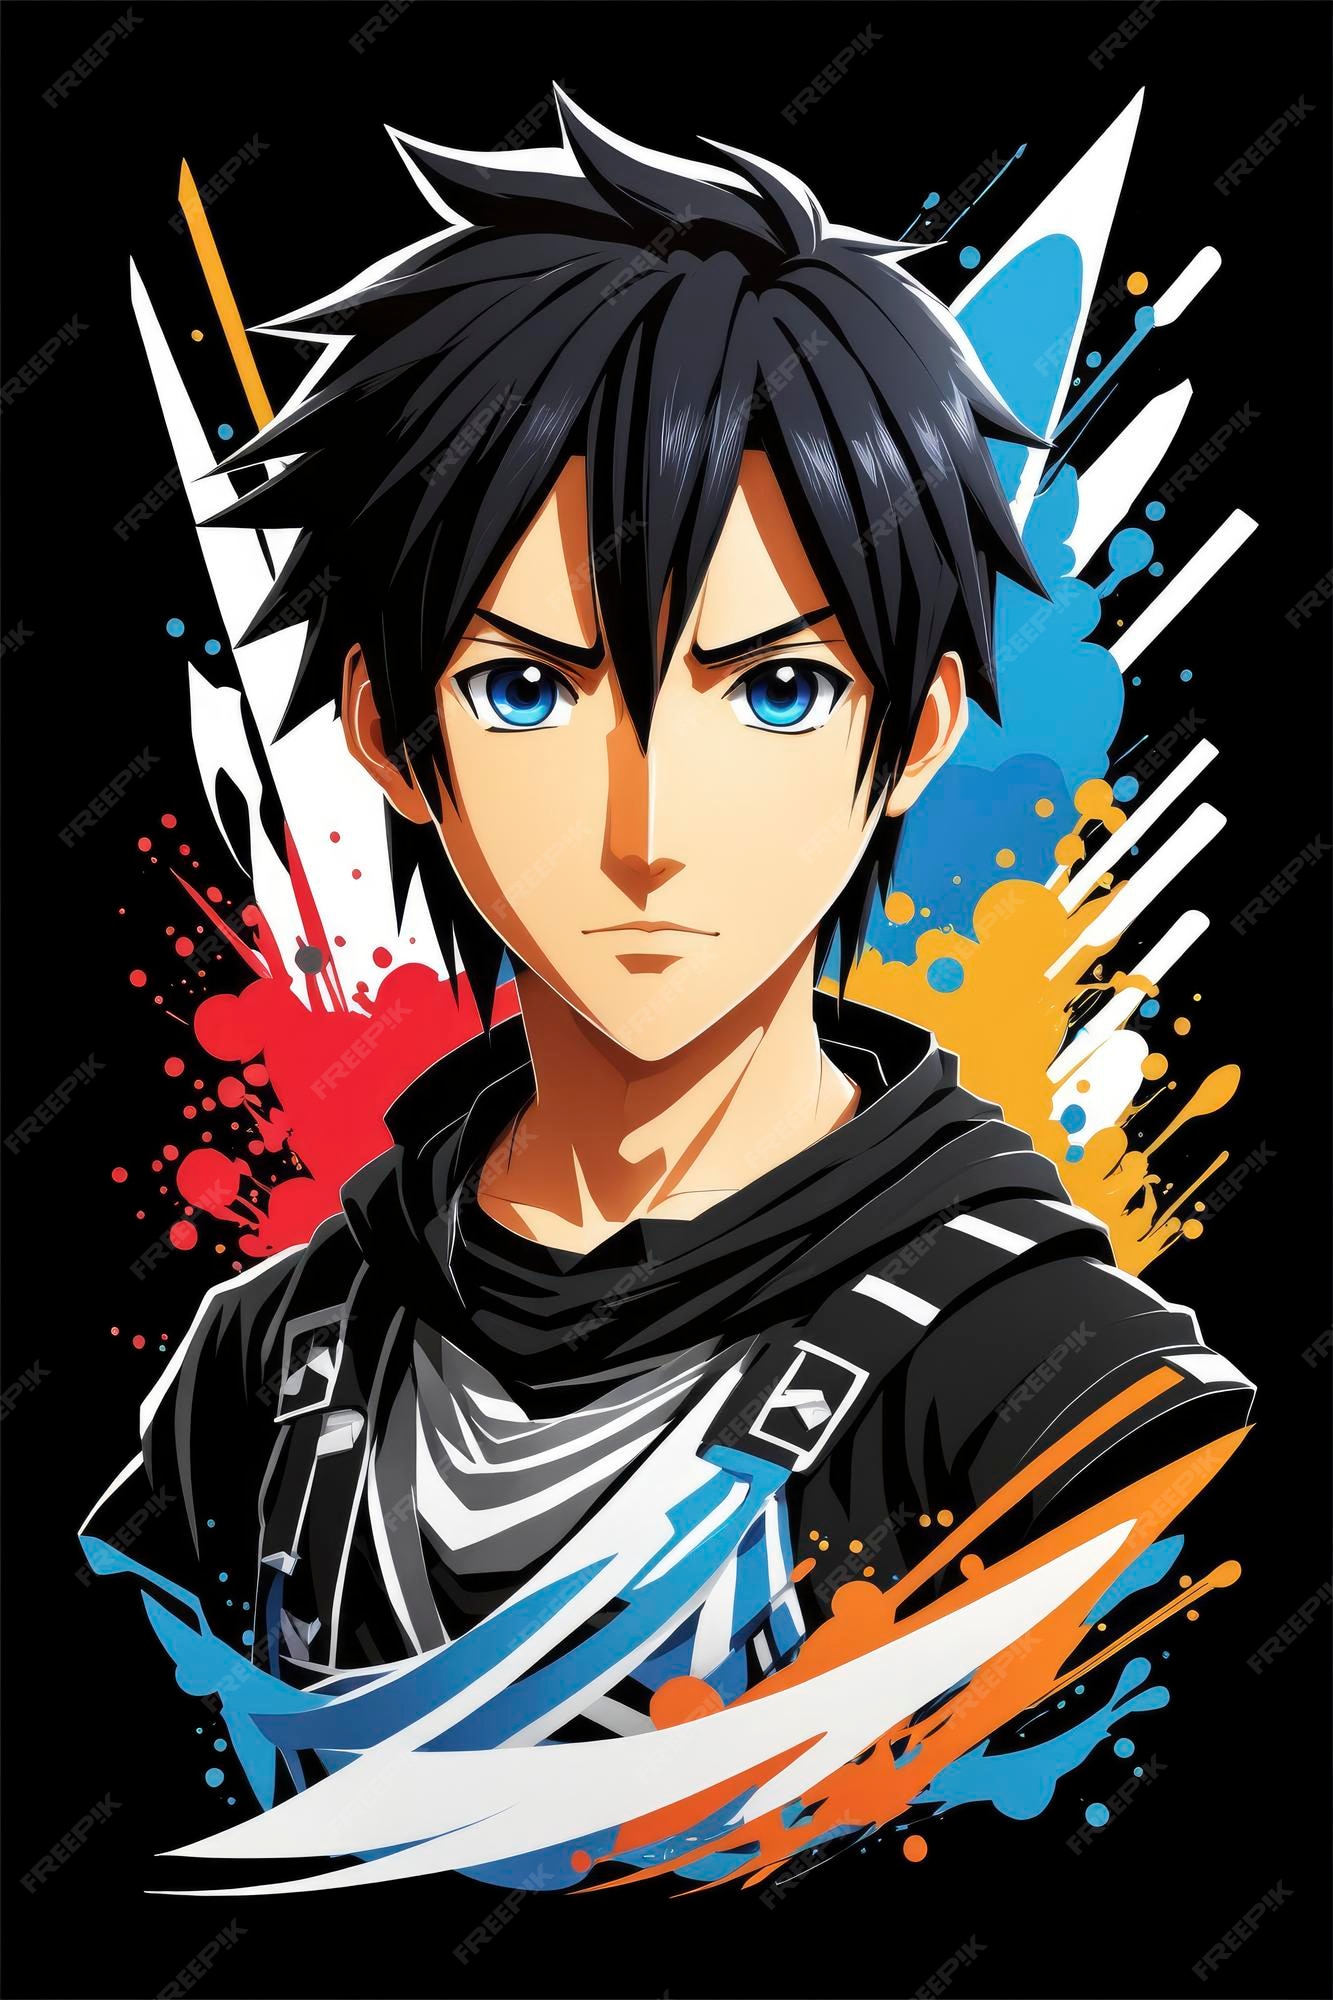 Personagens Do Anime - Sword Art Online